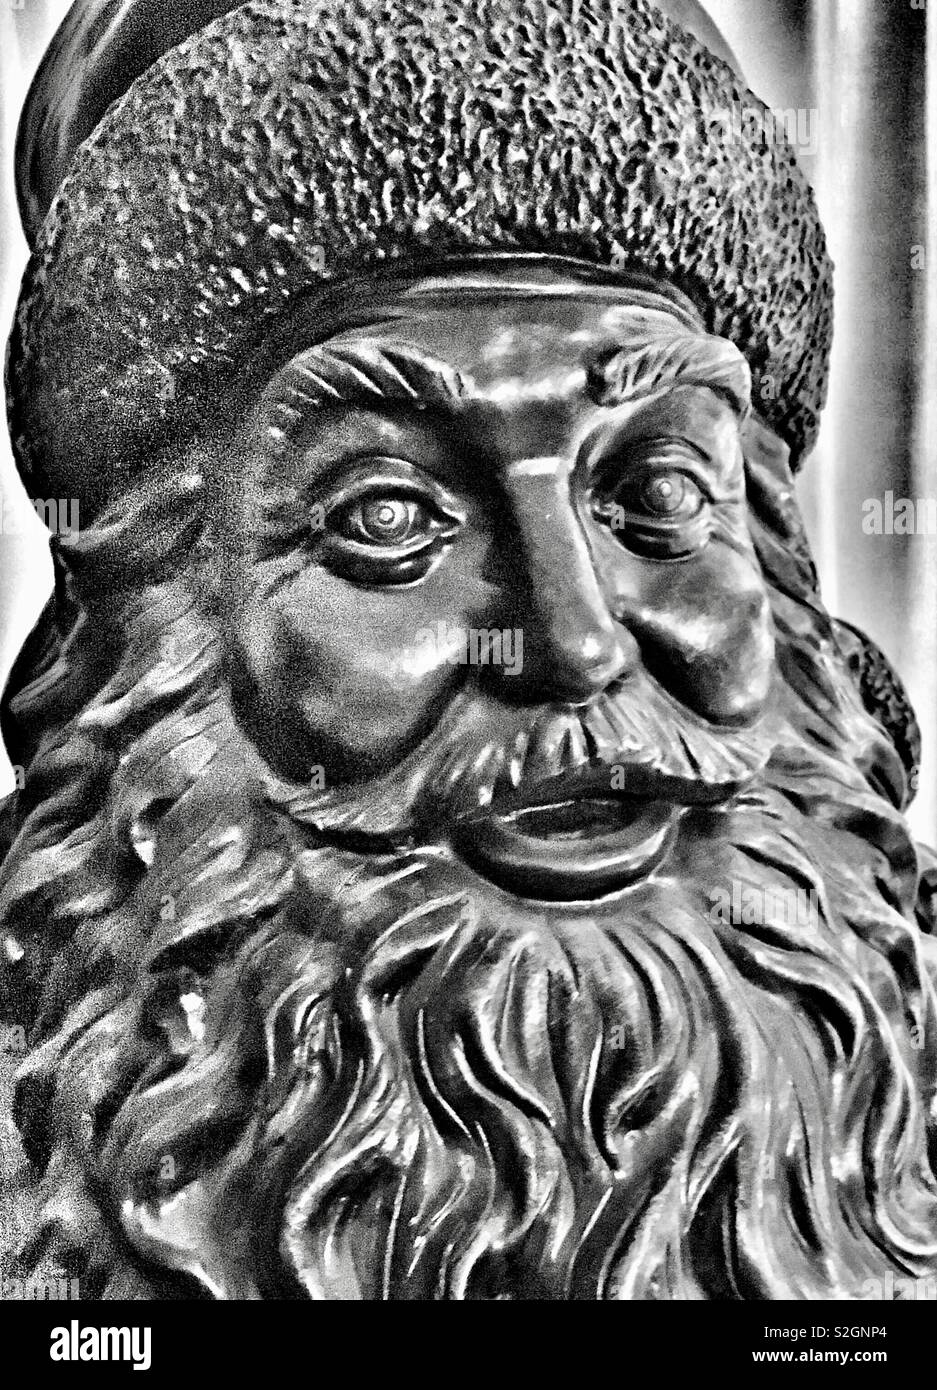 Gros plan du Santa creepy bronze statue avec de grands yeux et fur hat en noir et blanc Banque D'Images